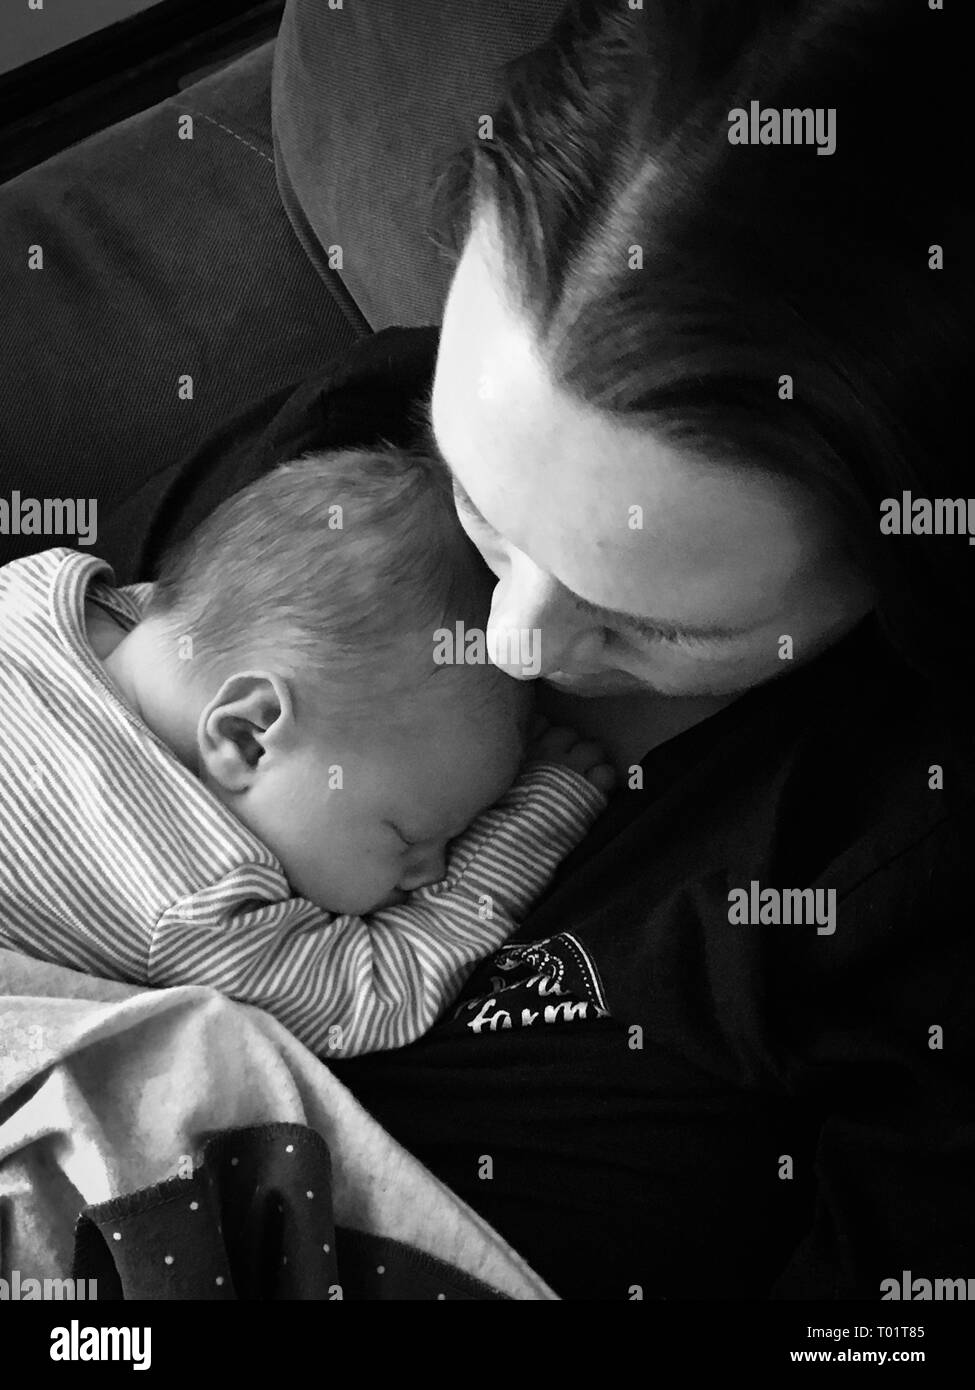 Image paisible de nouveau-nés de câlins avec sa mère le premier jour de l'hôpital. Excellent pour l'utilisation de la Fête des Mères,la vie pro/pro choix article Banque D'Images